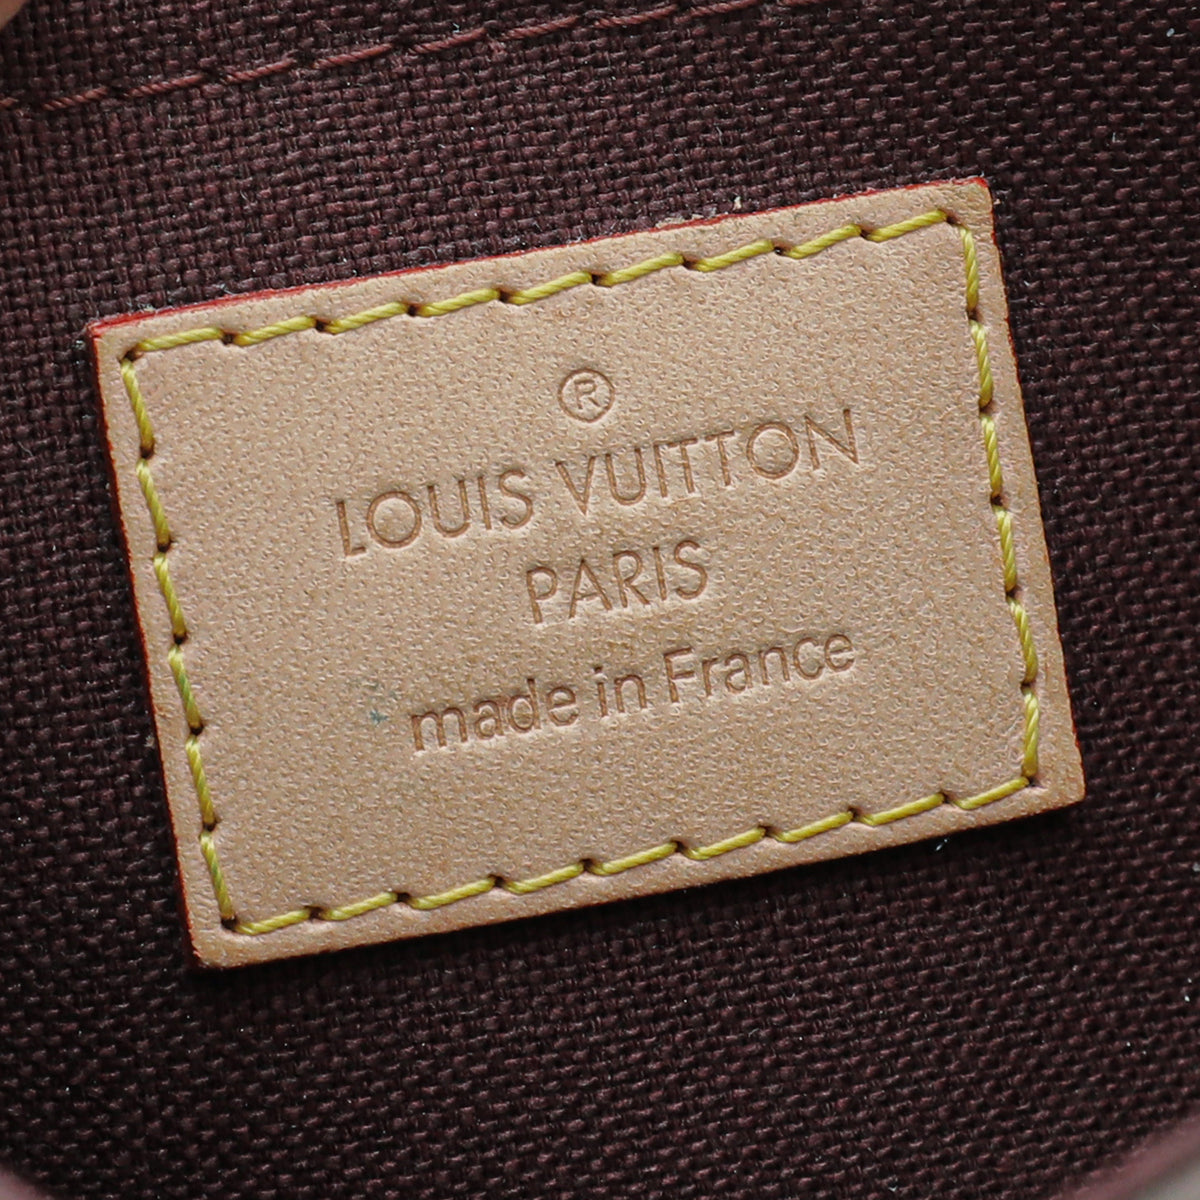 Louis Vuitton Gürtel aus Leder - Braun - Größe 80 - 37191692